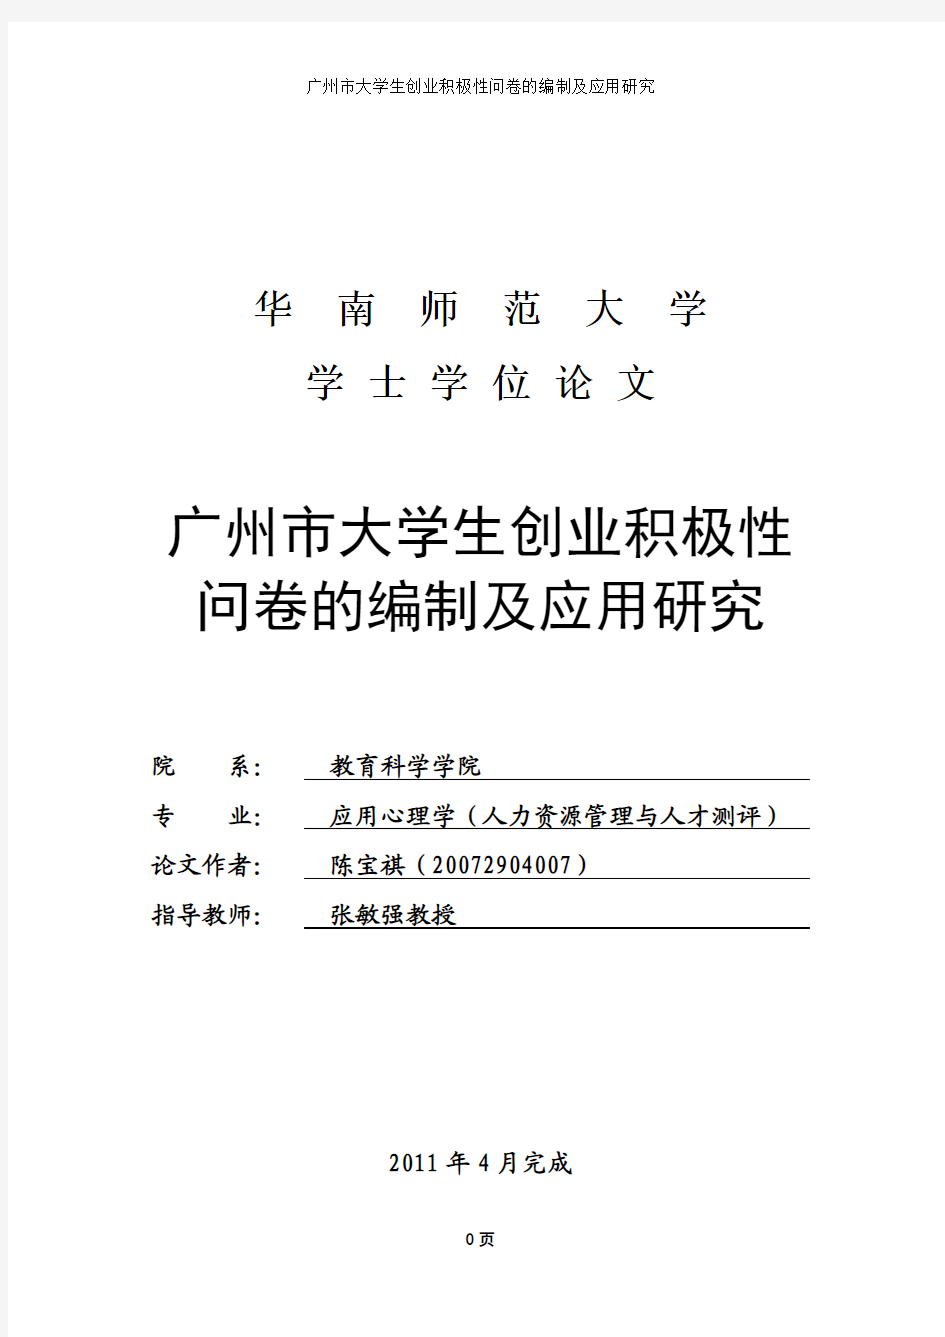 (改后)广州市大学生创业积极性研究报告(最终)